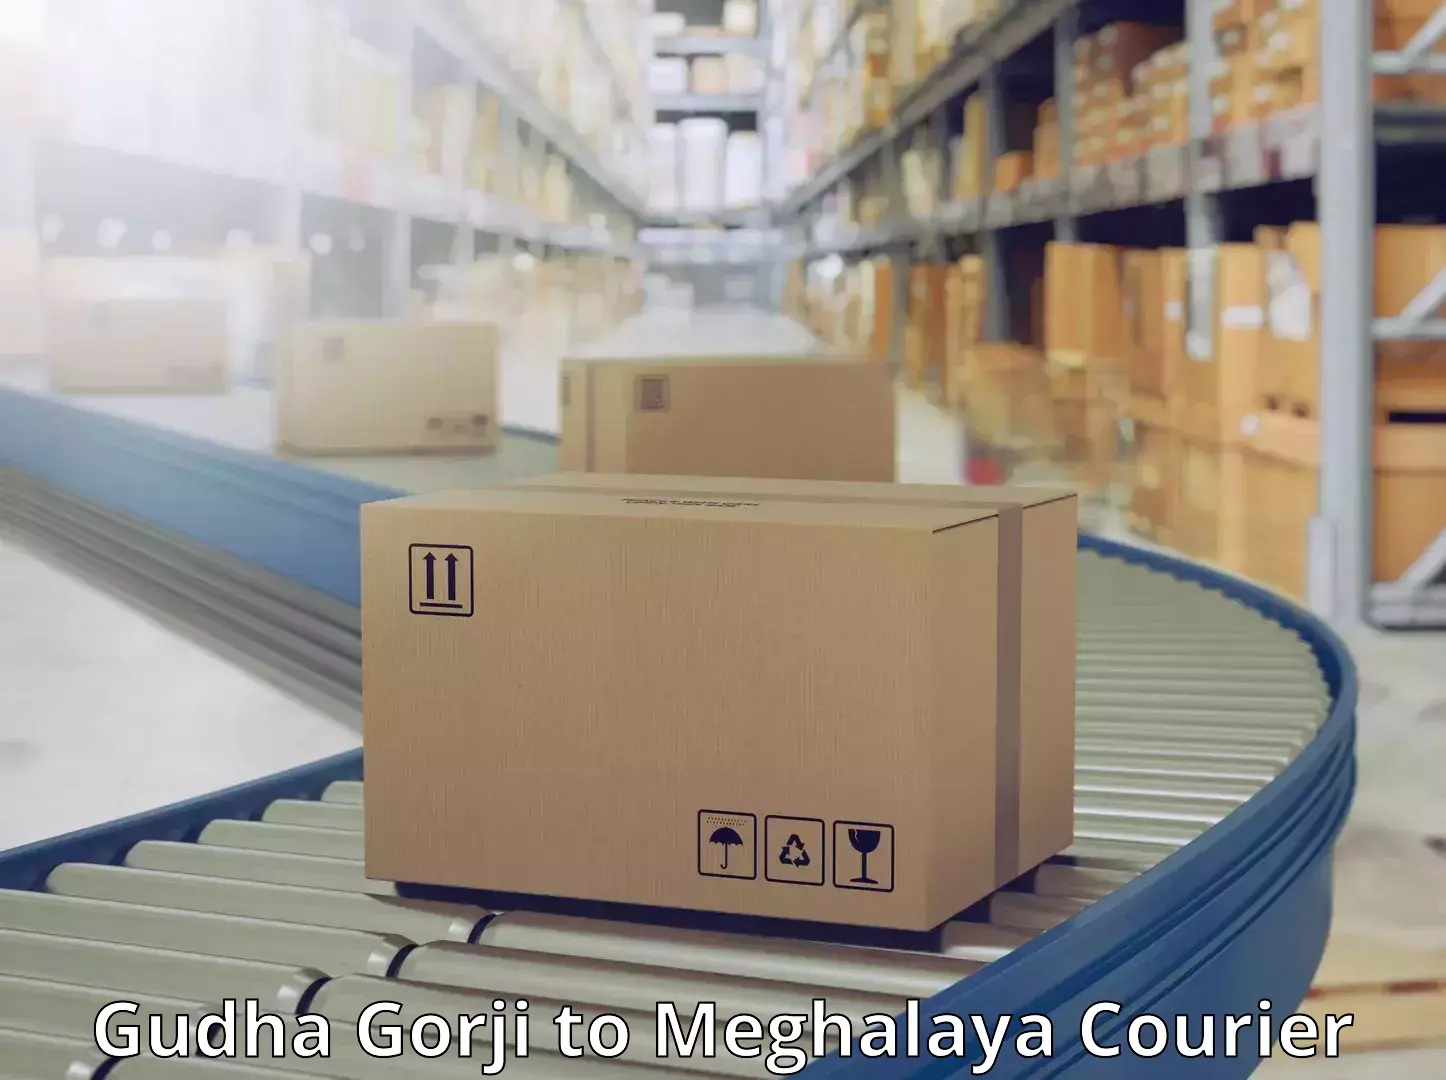 Modern delivery methods Gudha Gorji to Meghalaya